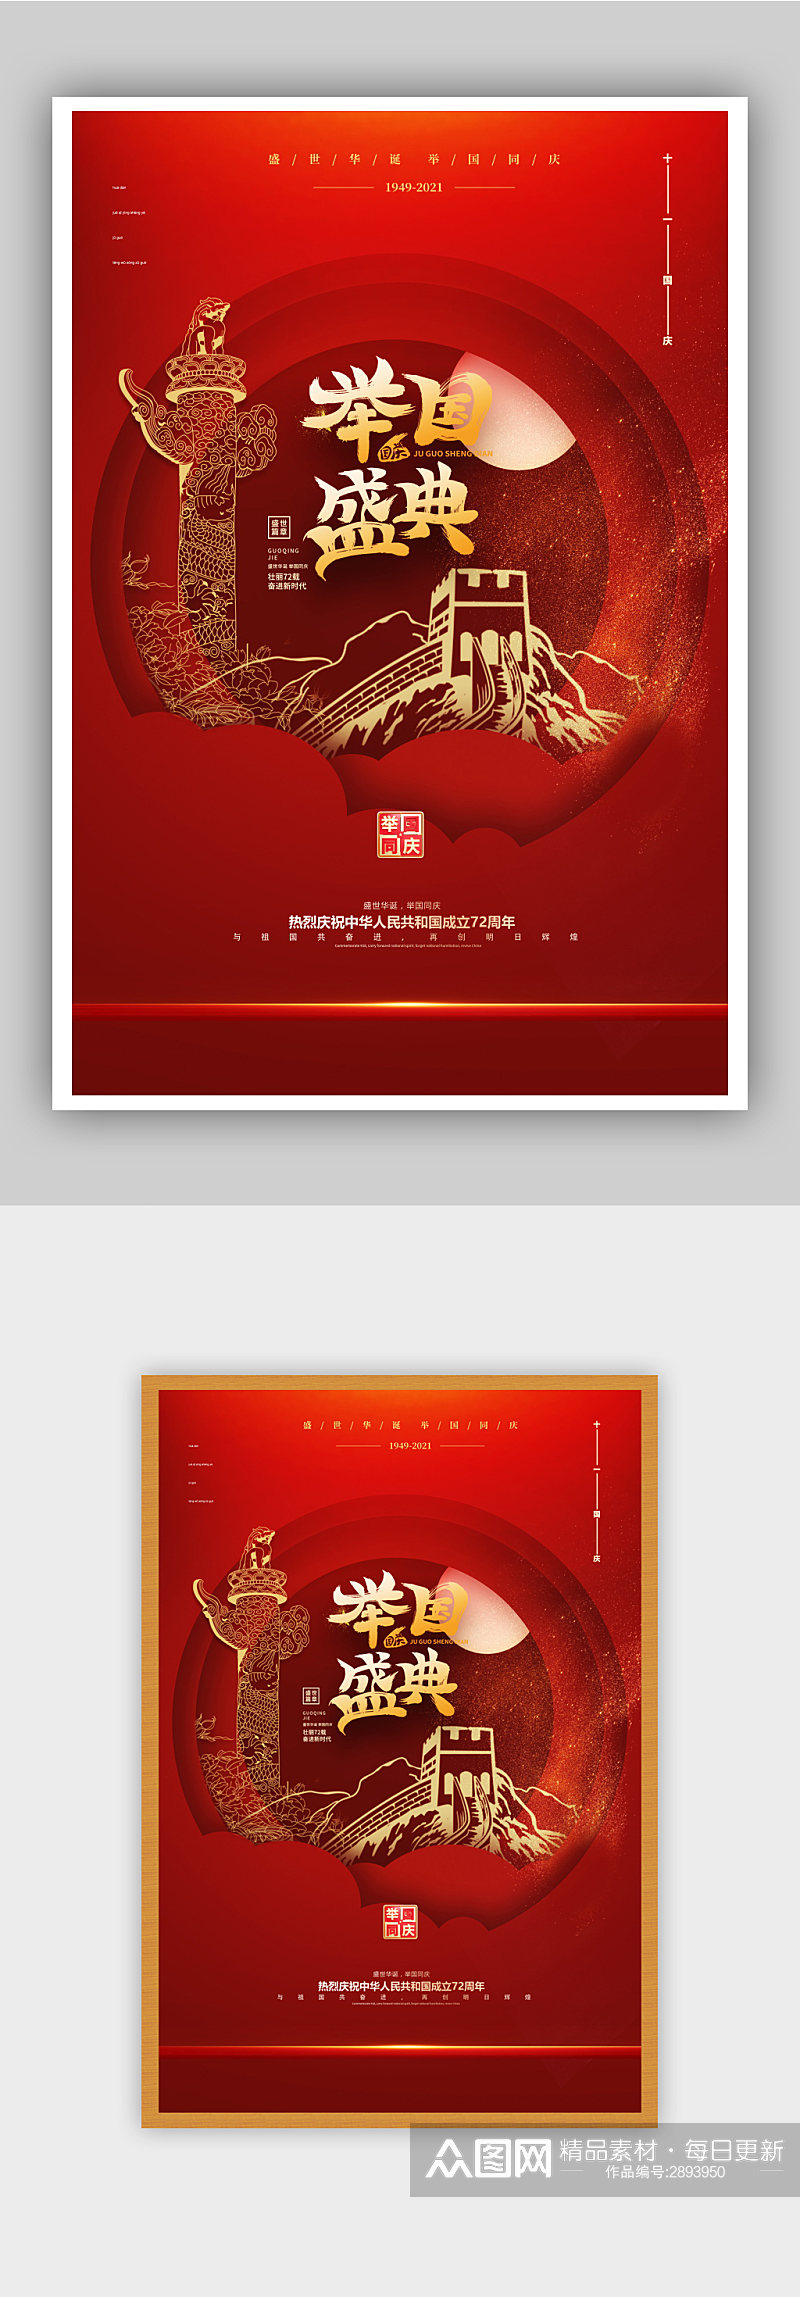 新中国72周年海报素材